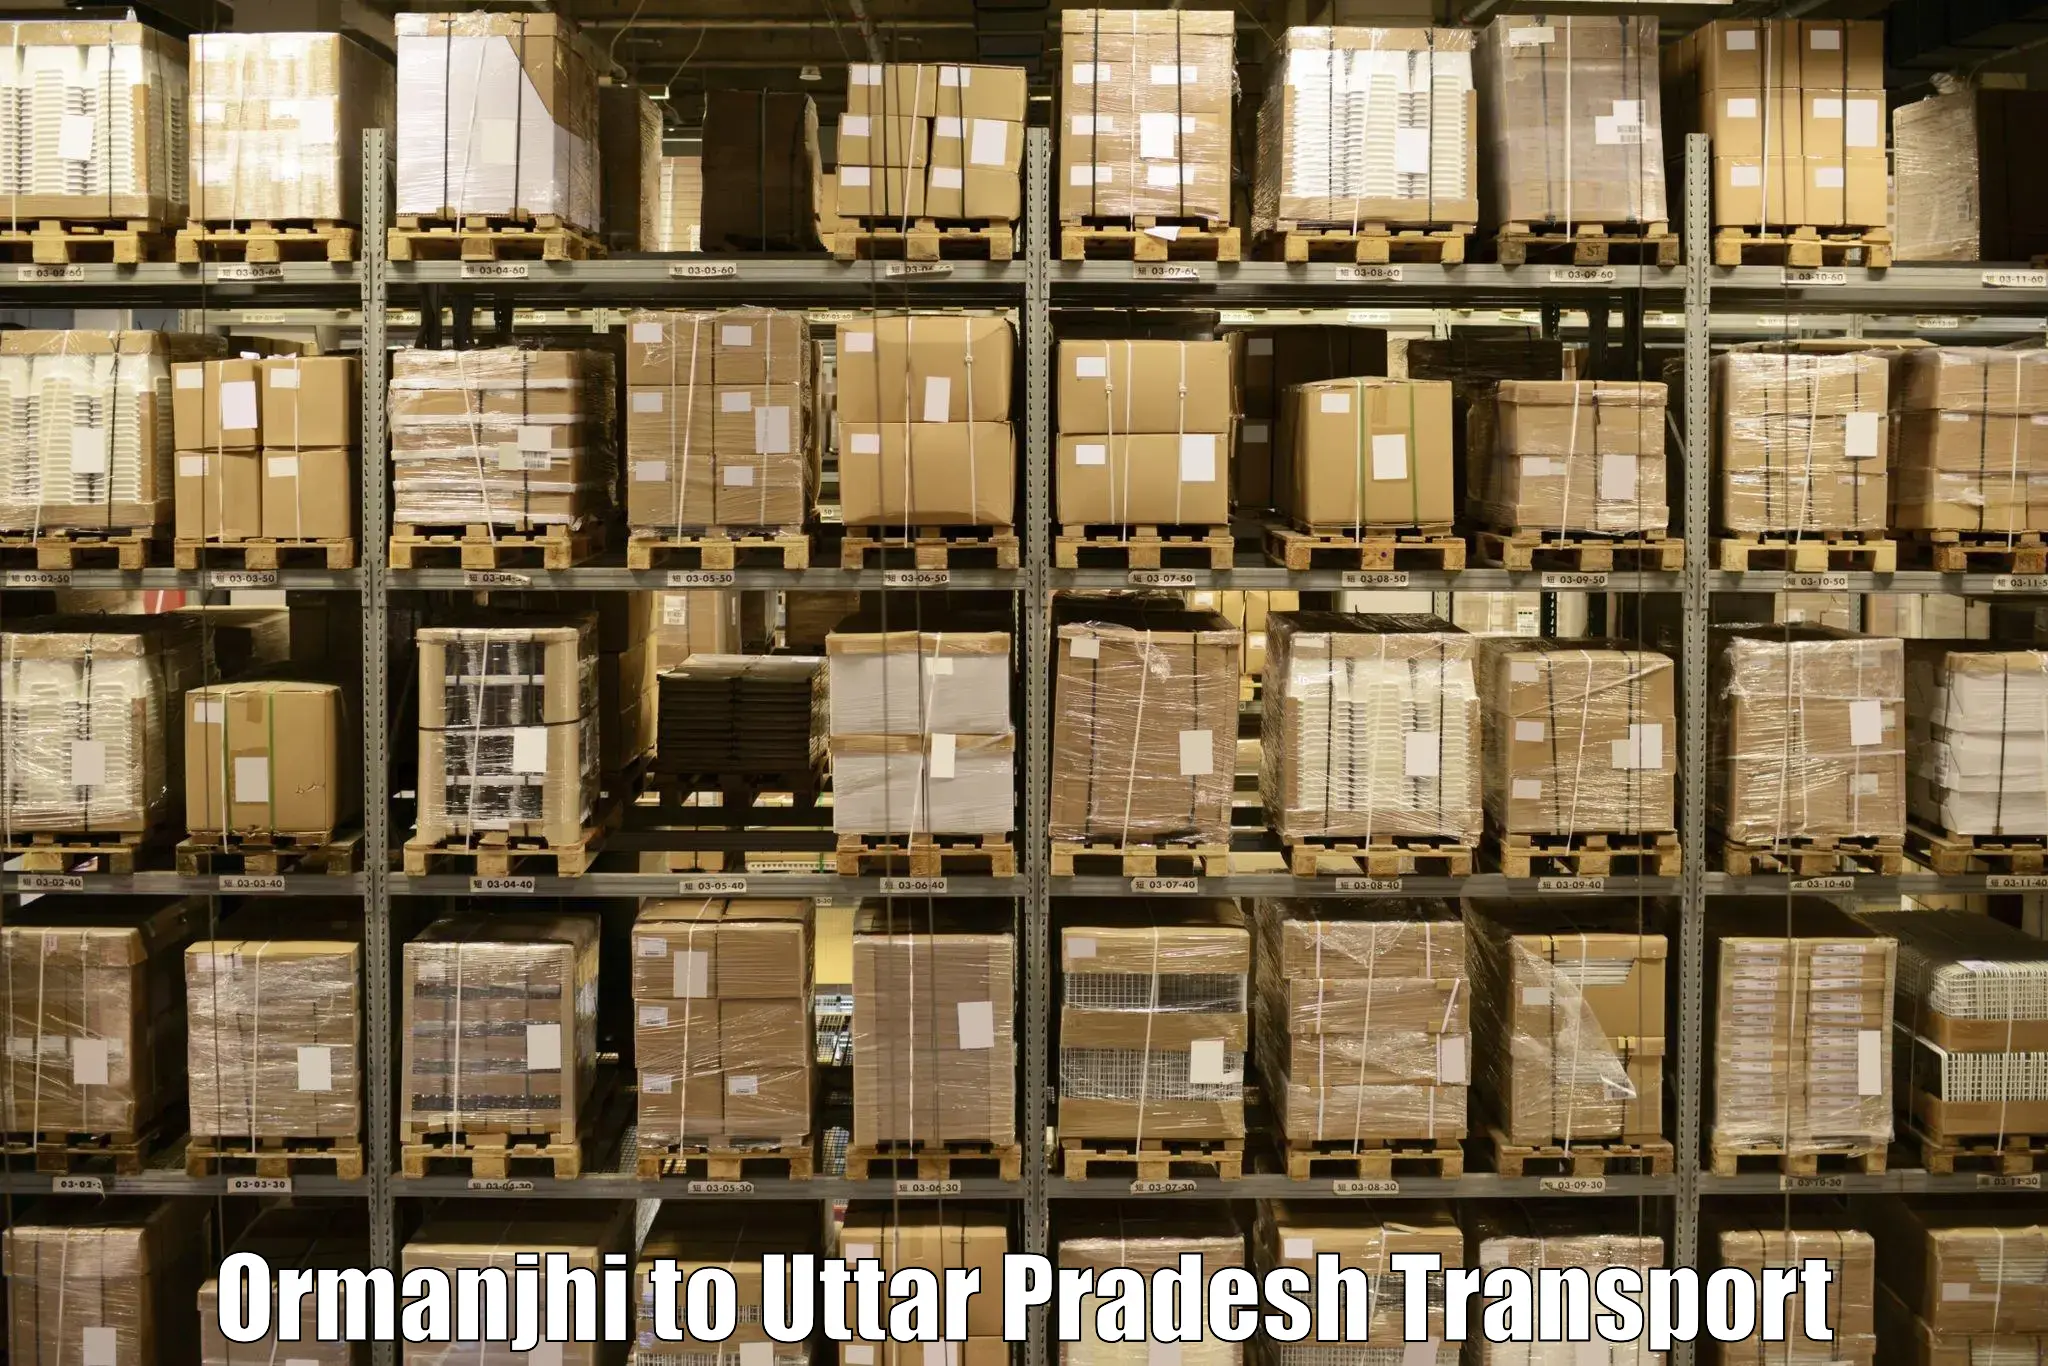 Two wheeler parcel service Ormanjhi to Thakurdwara